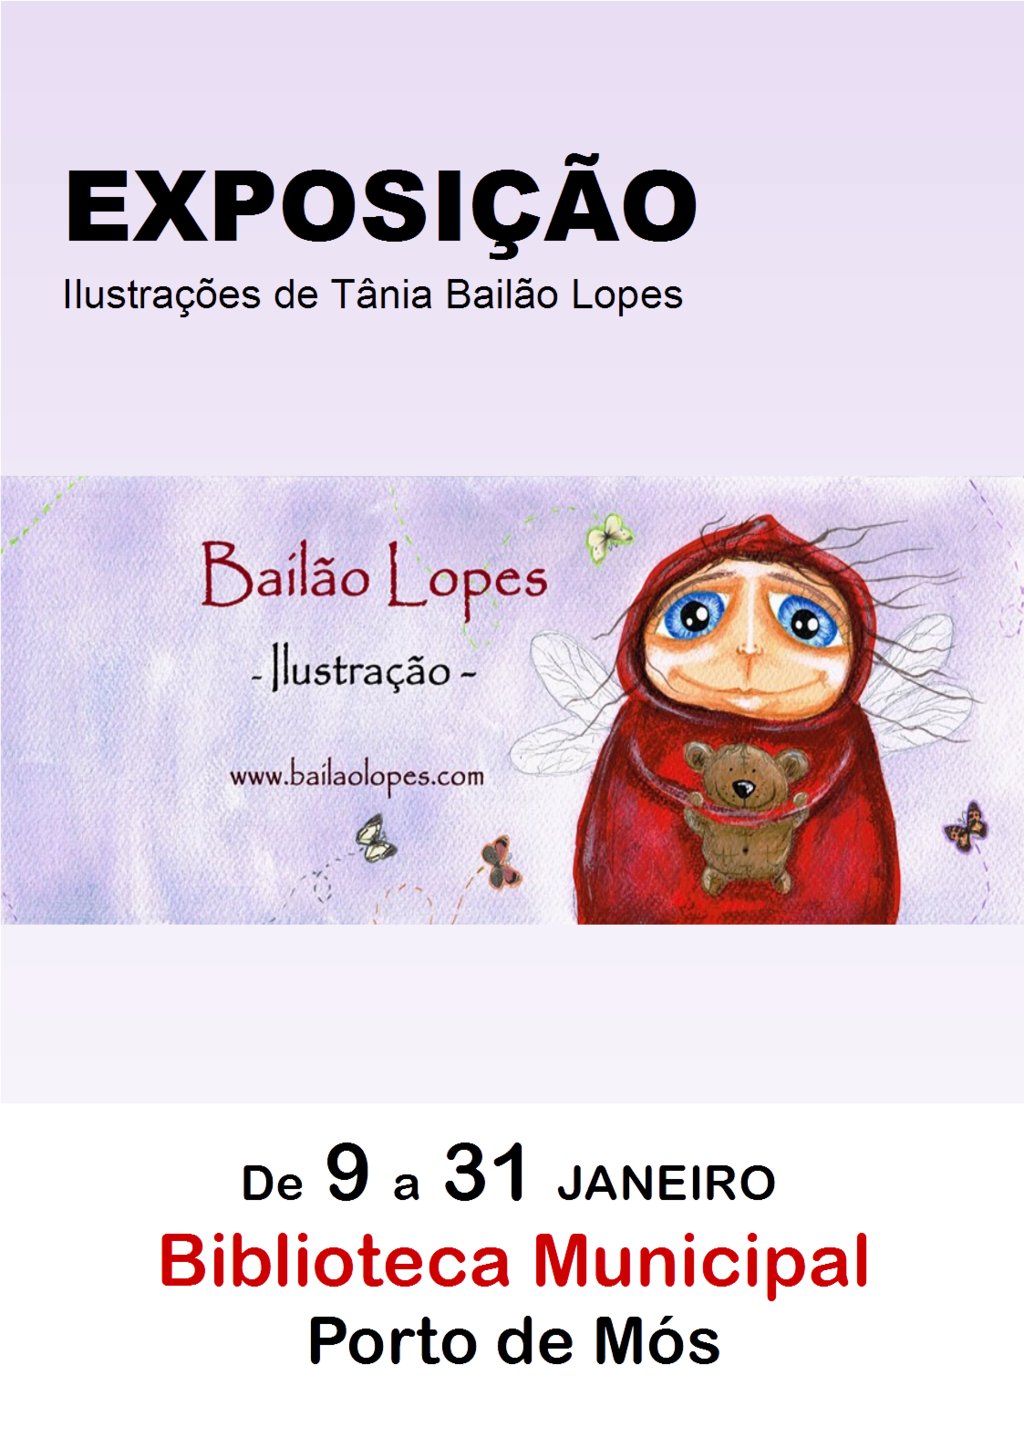 Exposição "Ilustrações de Tânia Bailão Lopes"